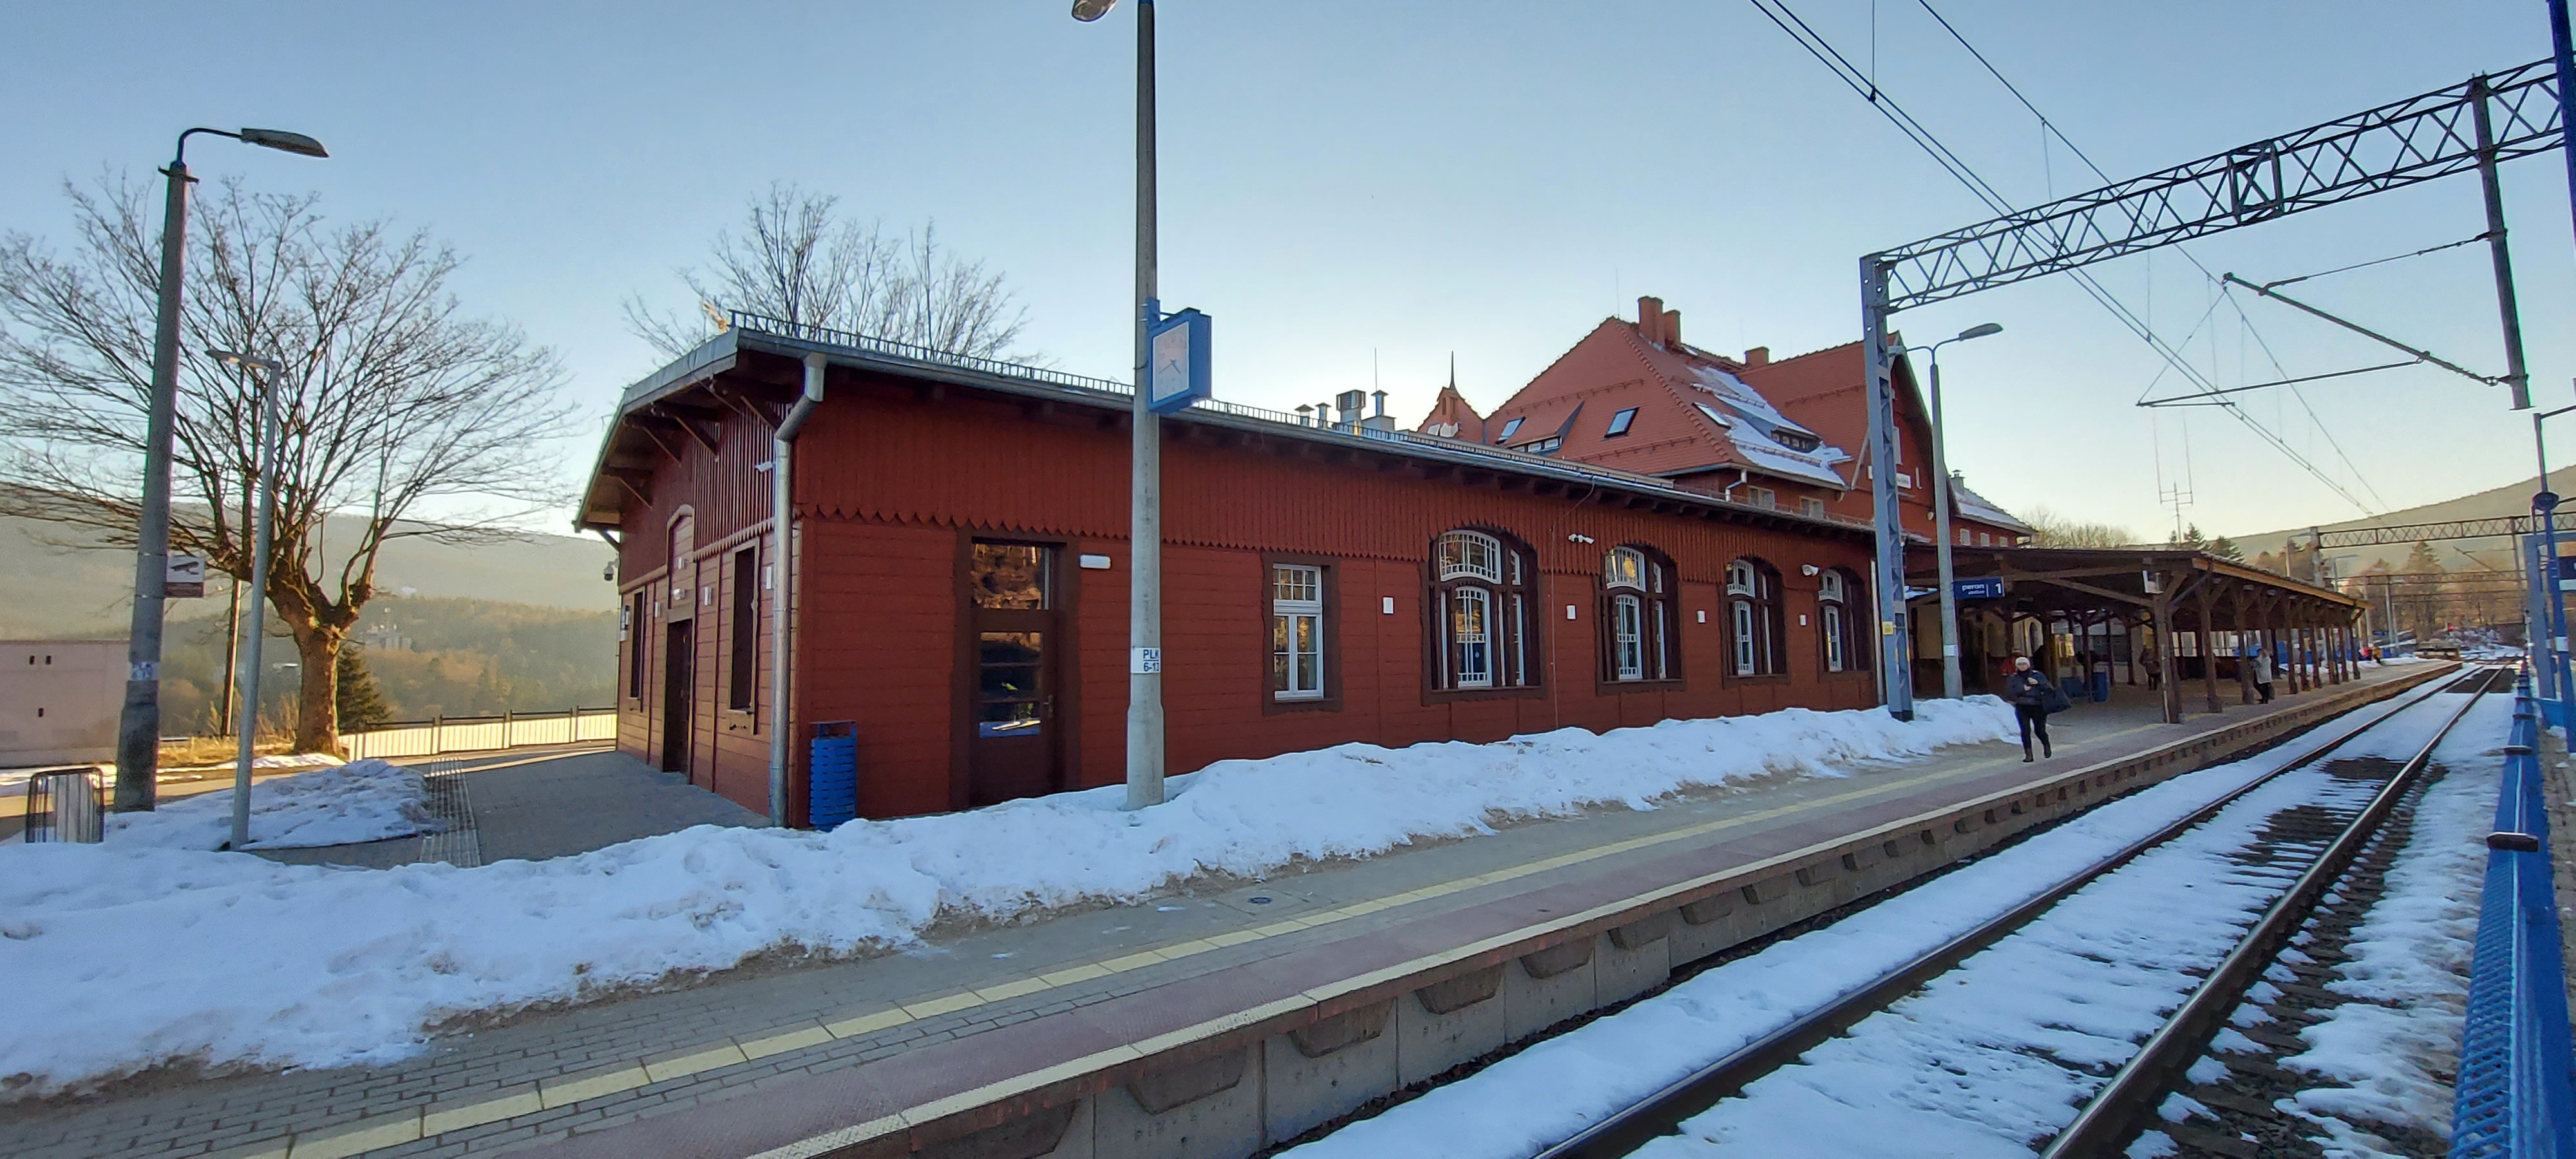 Stacja kolejowa w Szklarskiej Porębie